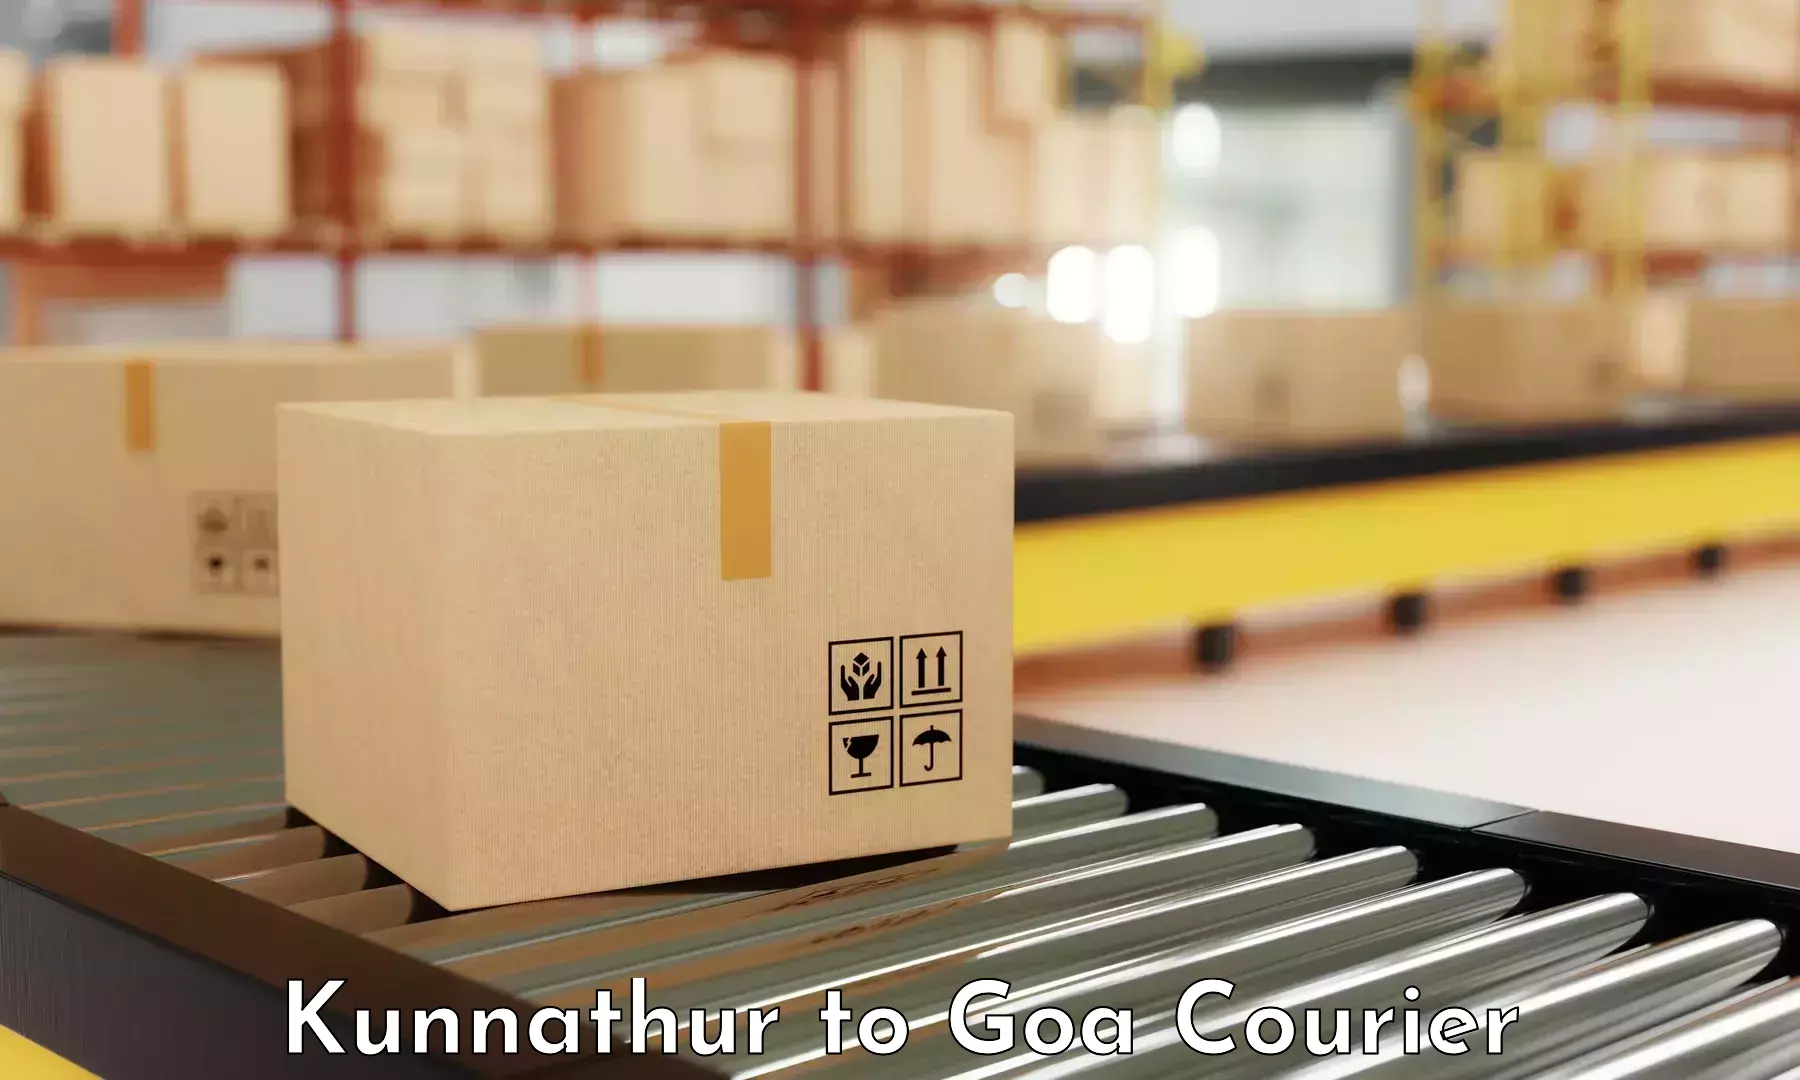 Global shipping networks Kunnathur to IIT Goa